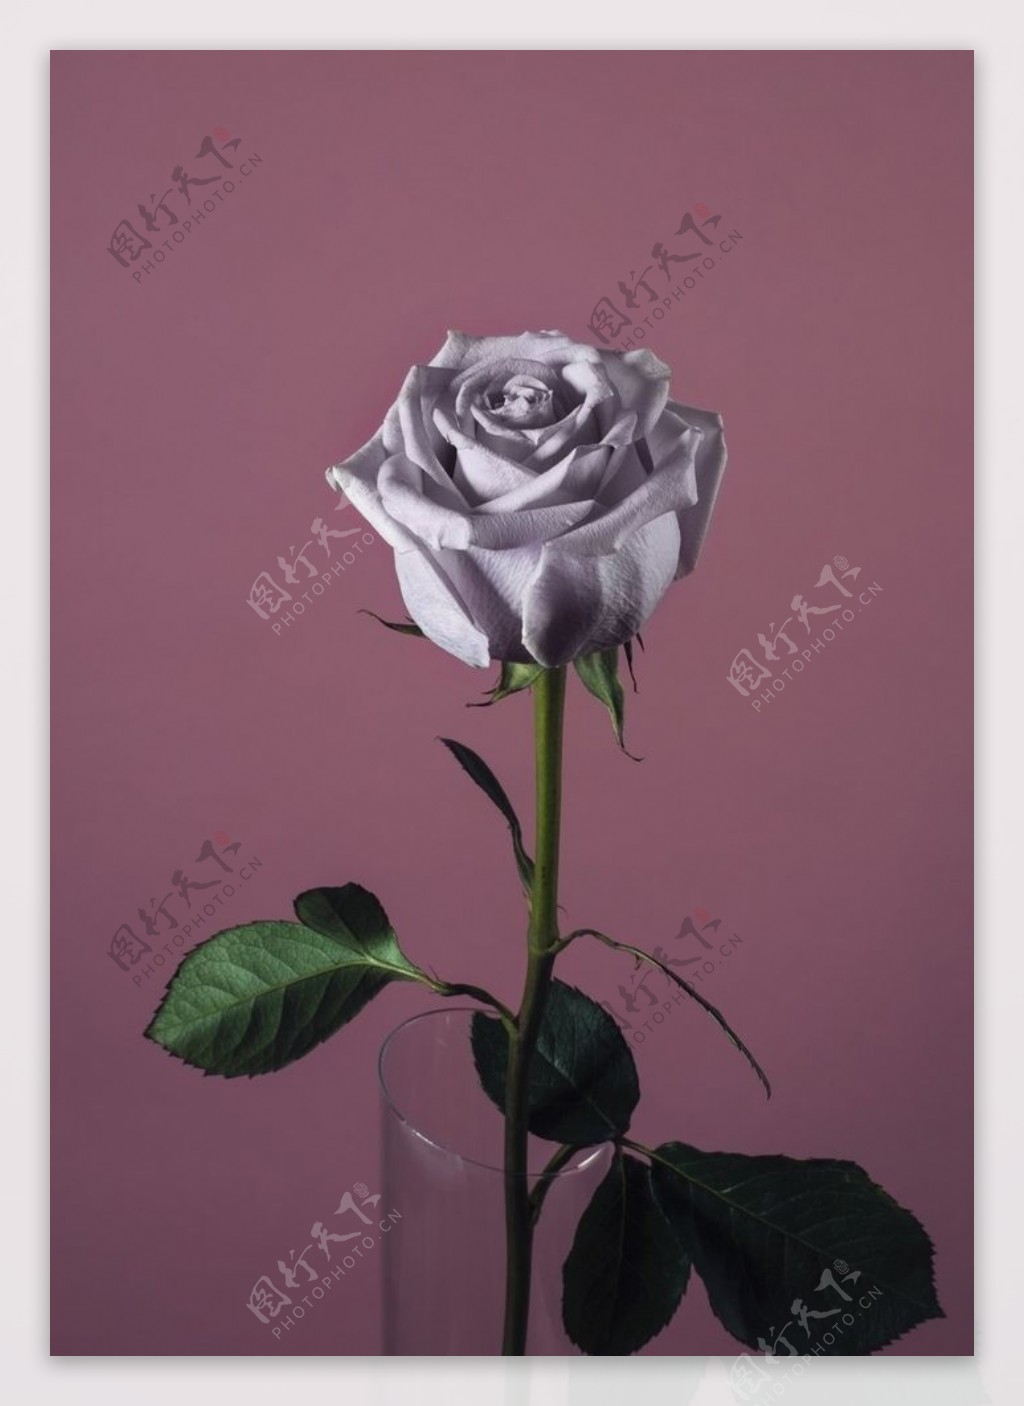 紫色的玫瑰花